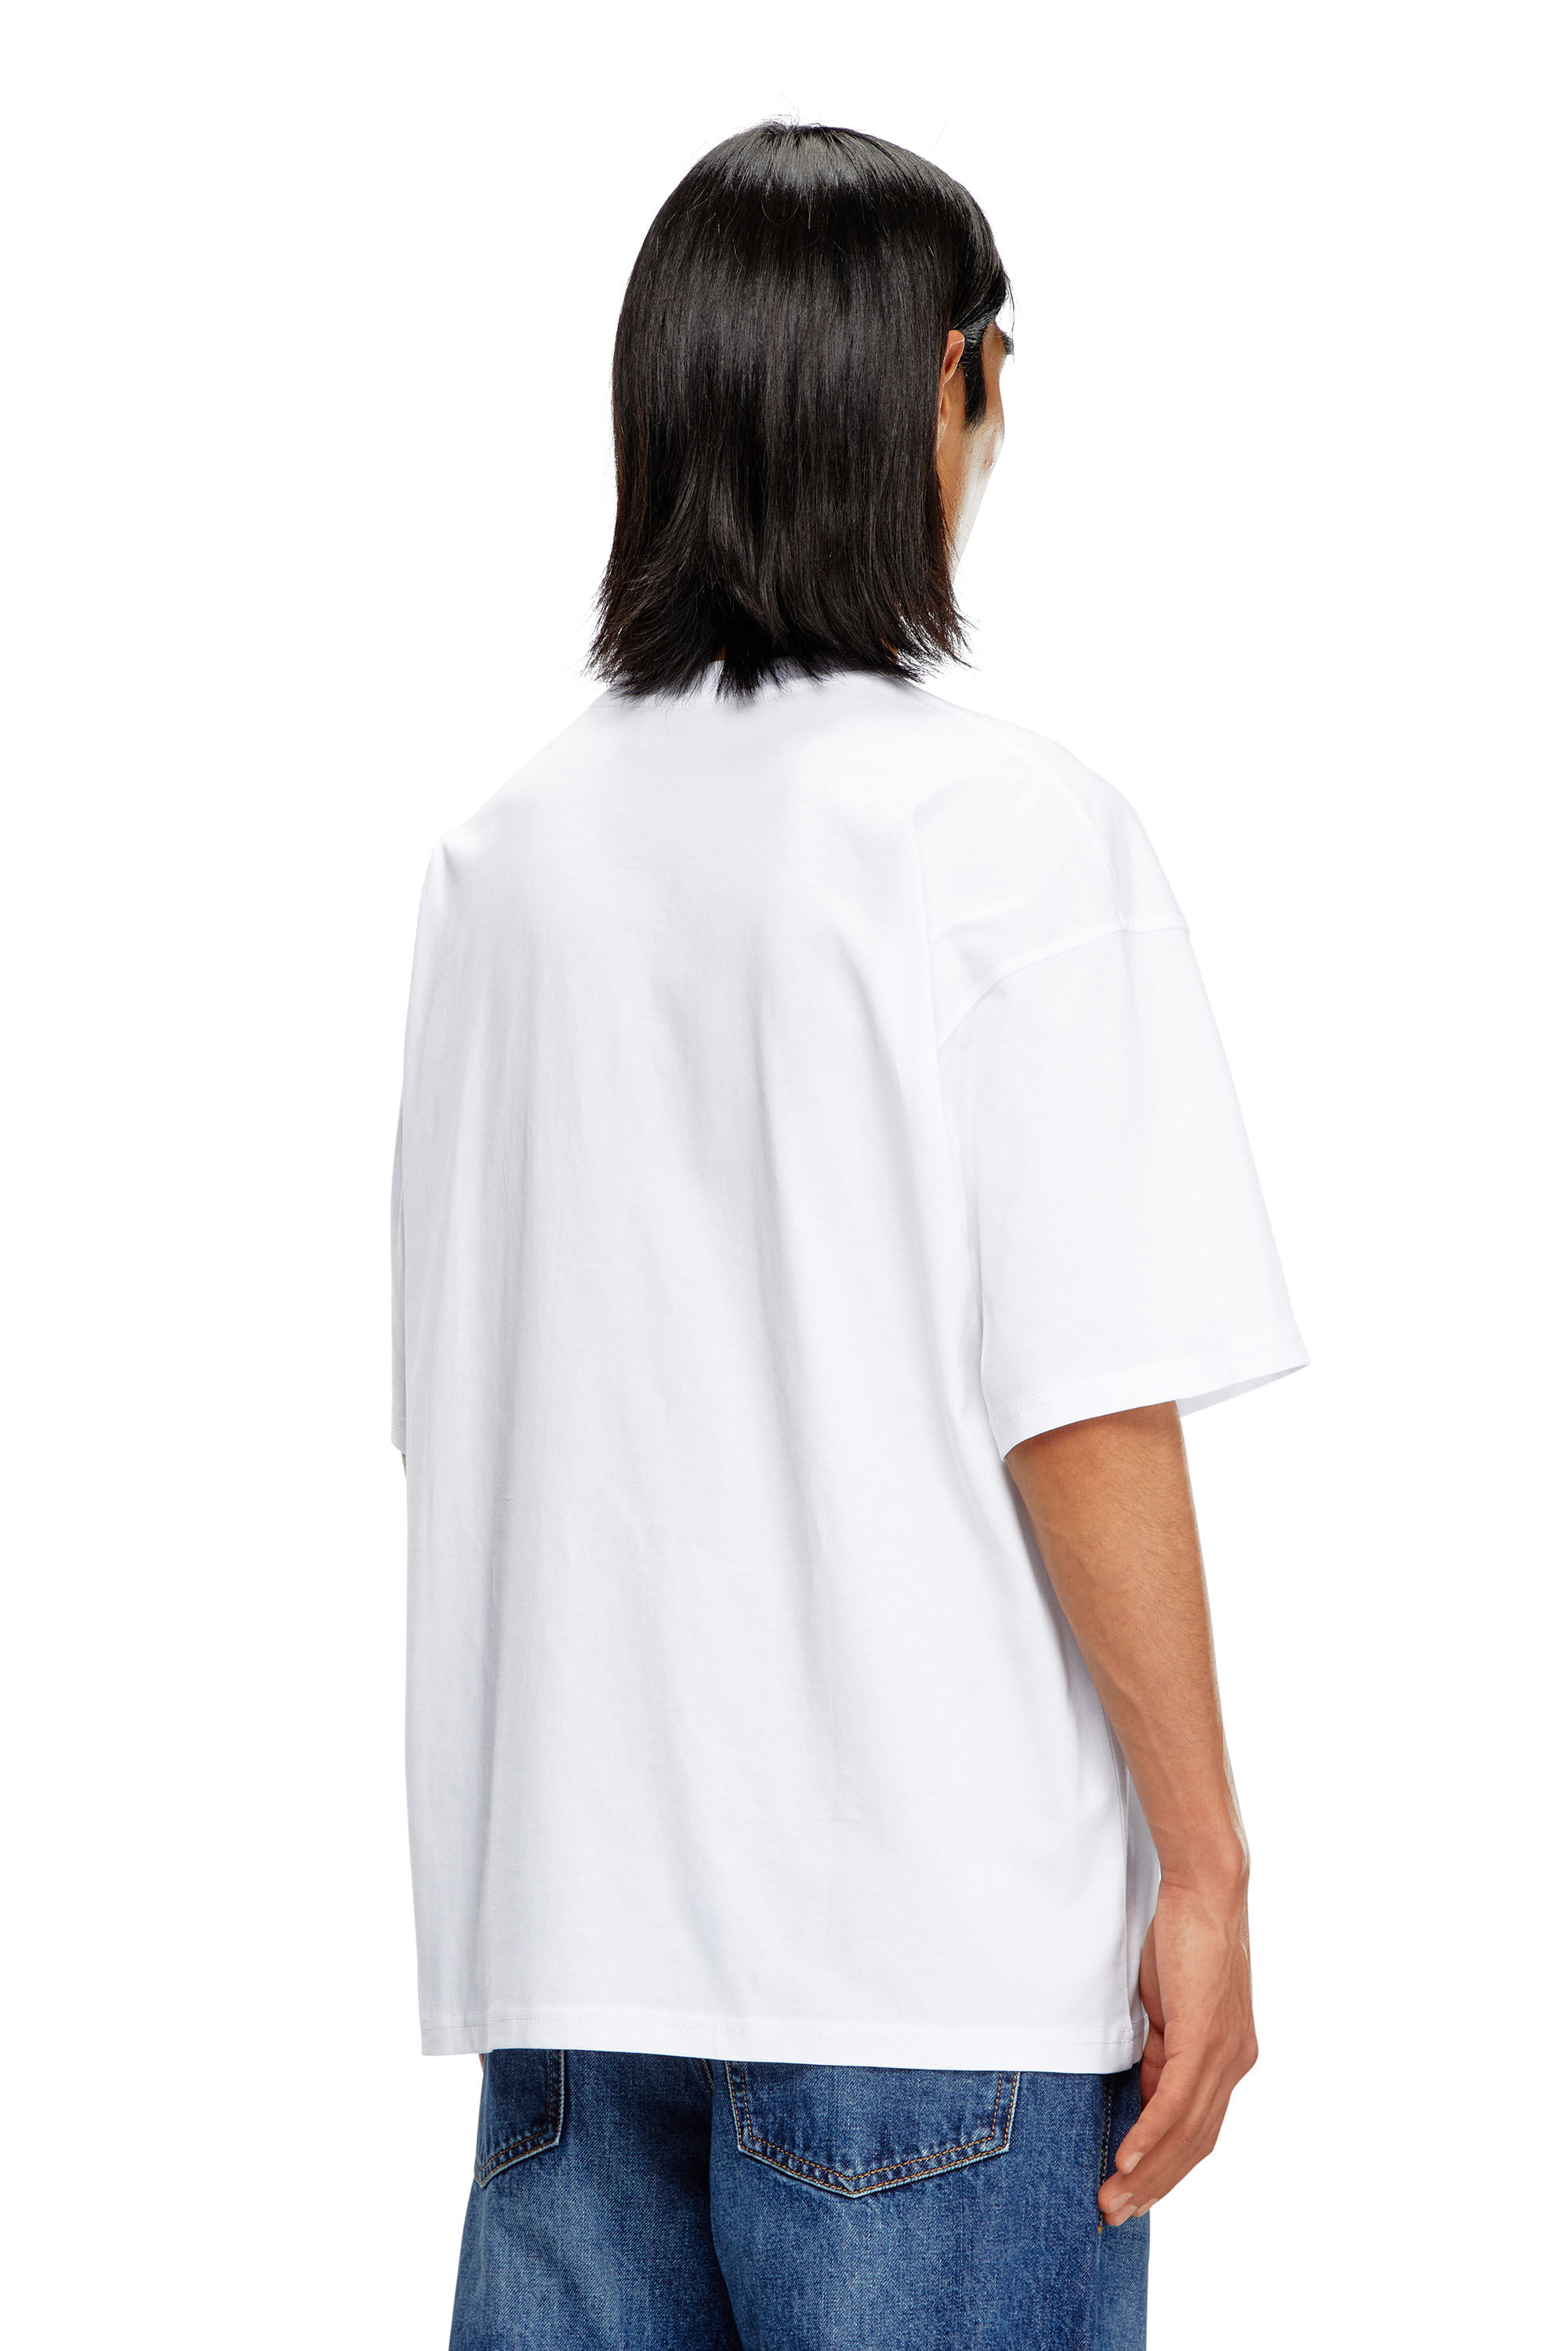 Diesel - T-BOXT-D, Unisex Camiseta con parche D bordado in Blanco - Image 4